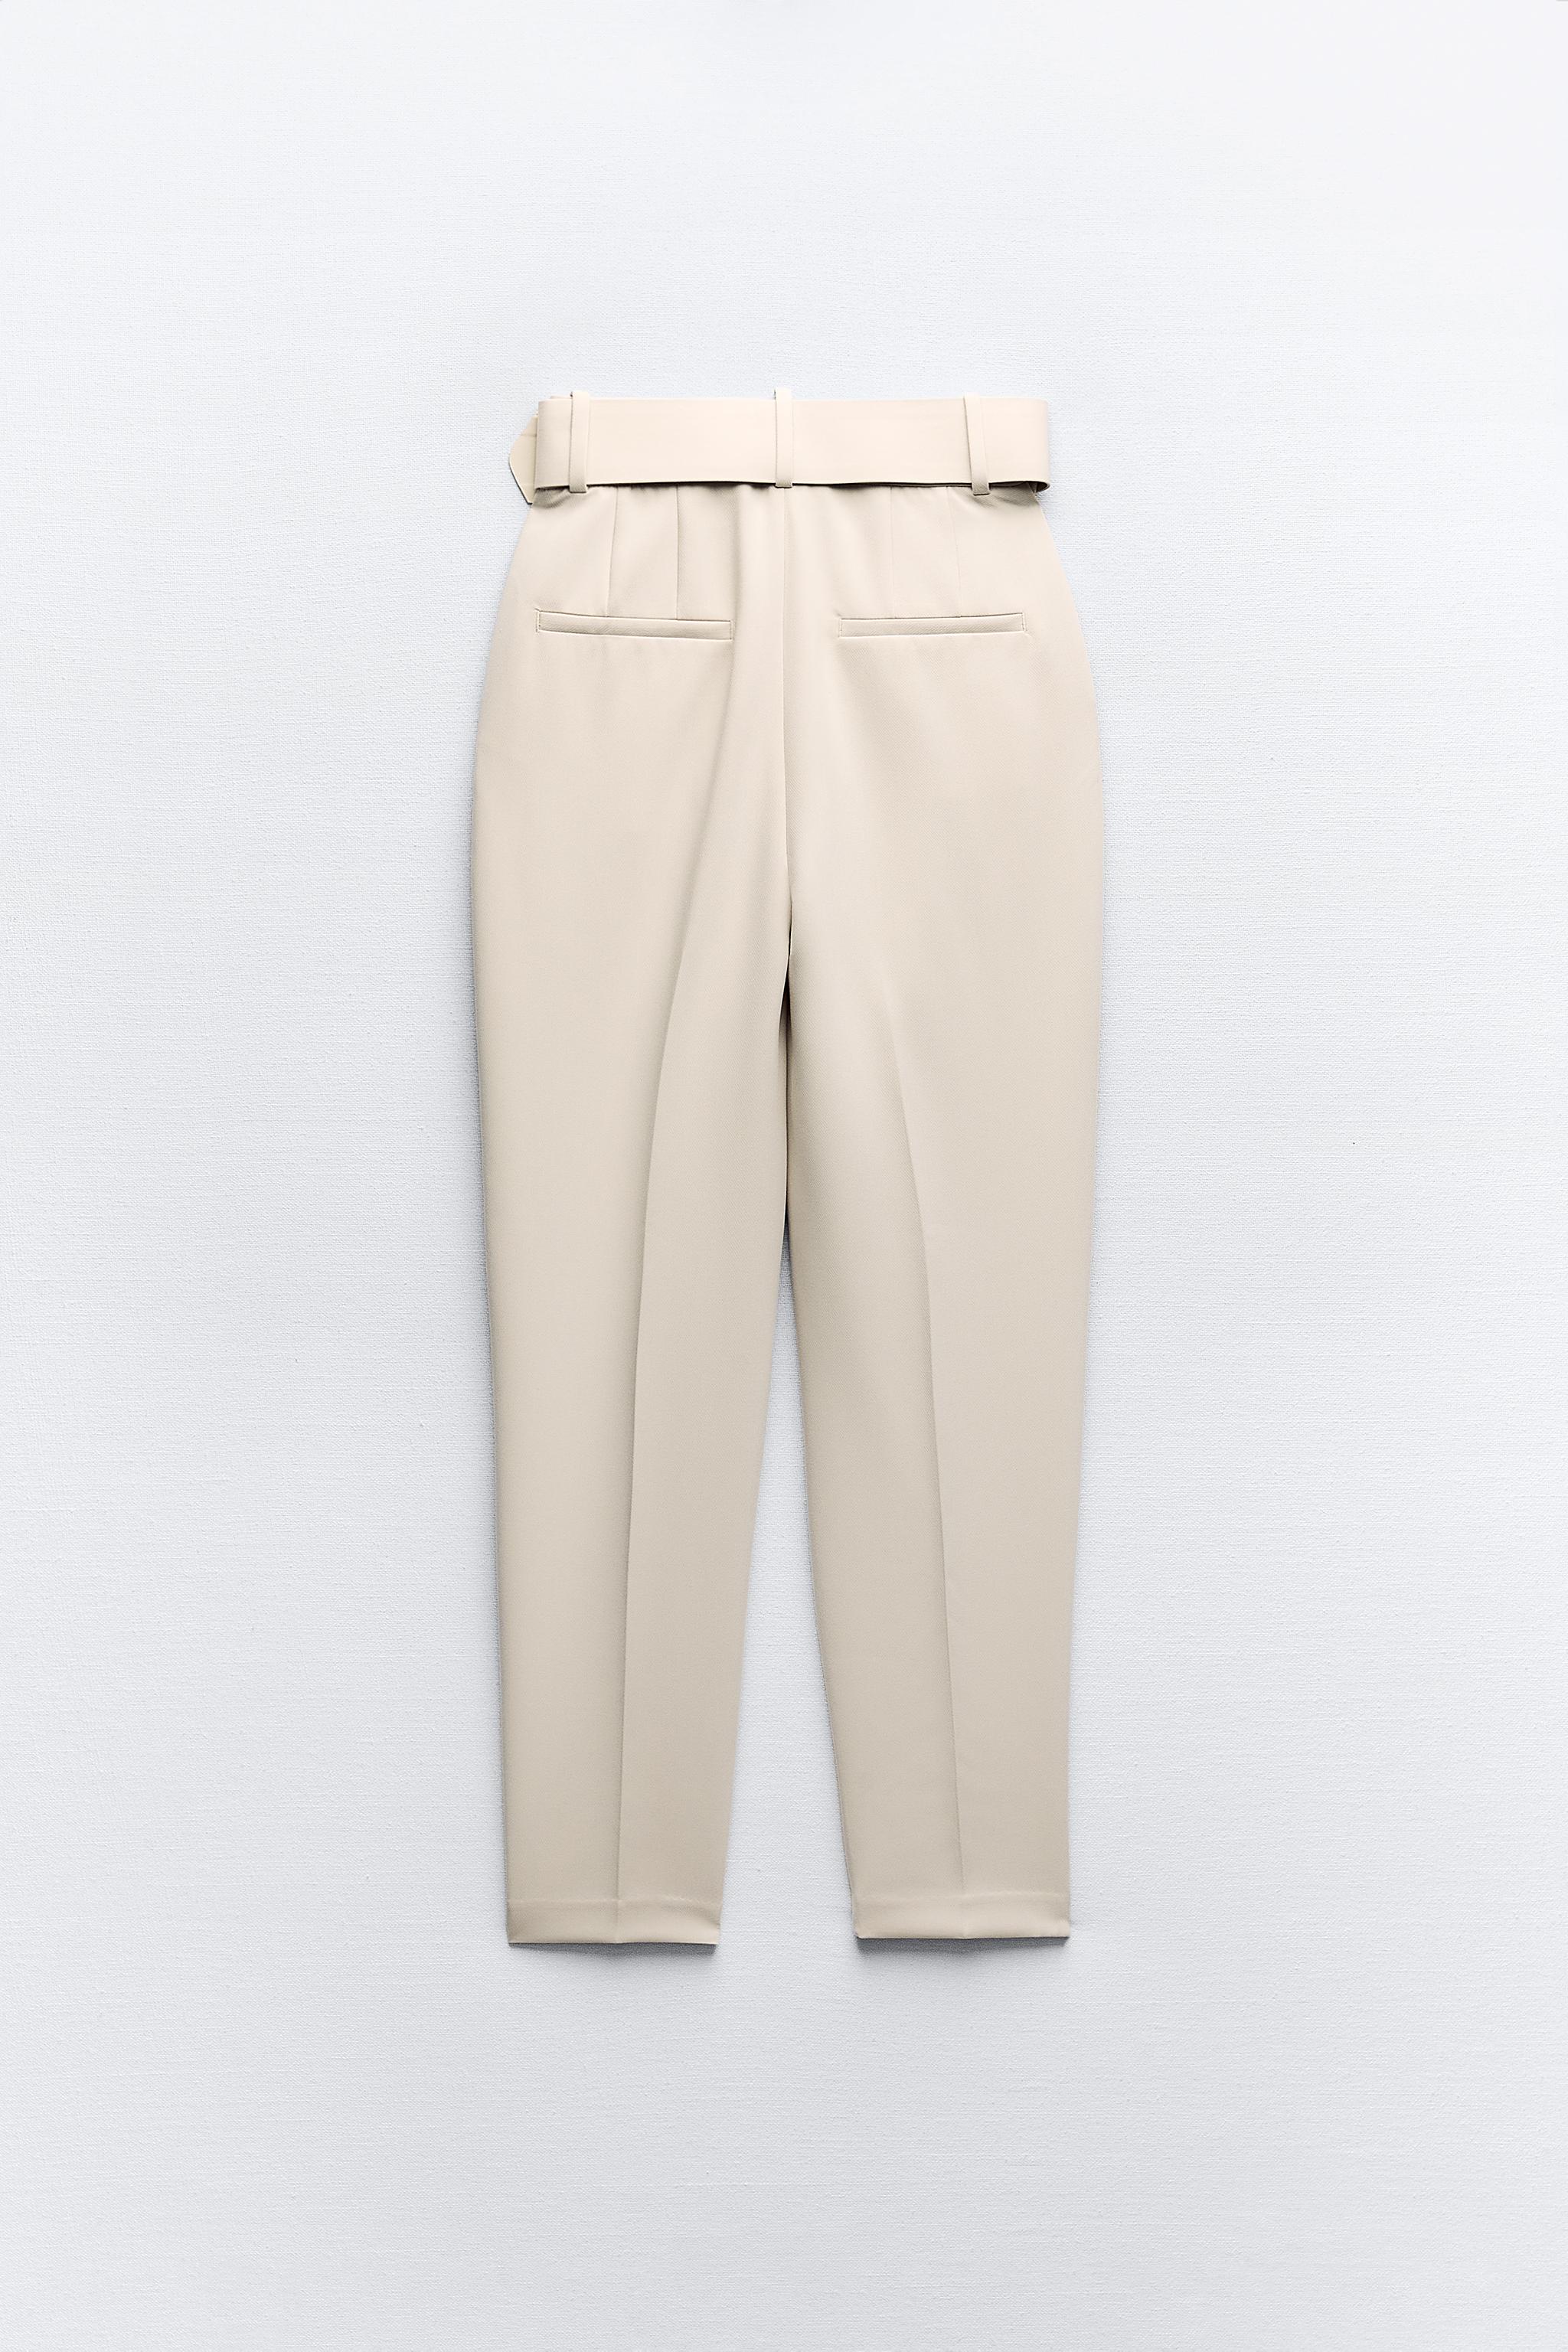 Zara tan pants stripe size 2 small